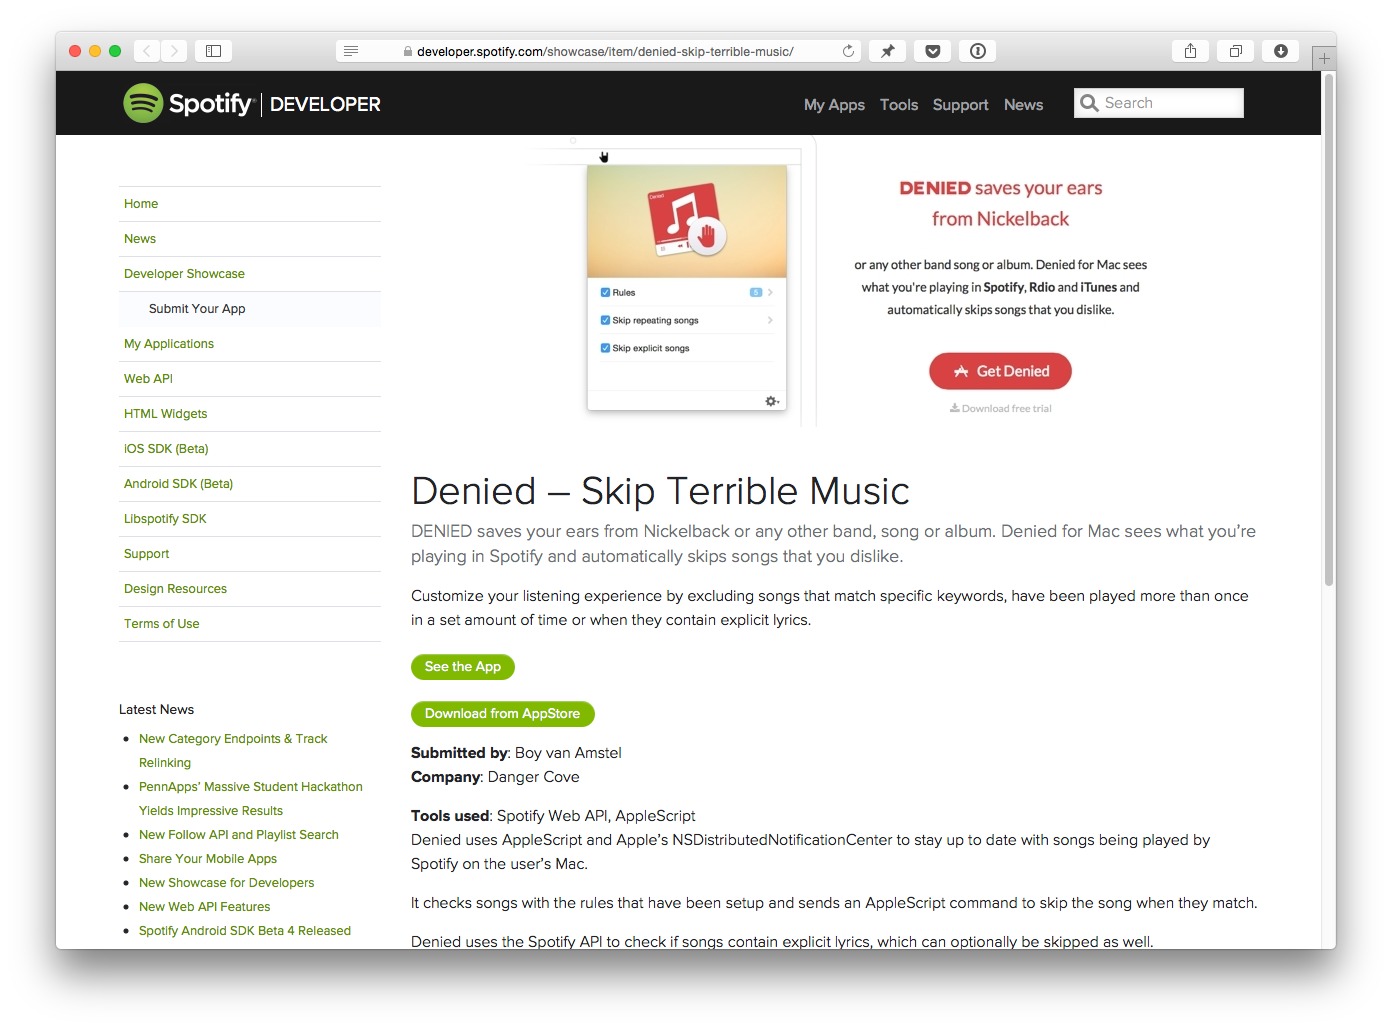 Denied on Spotify's Developer Showcase Detail Page